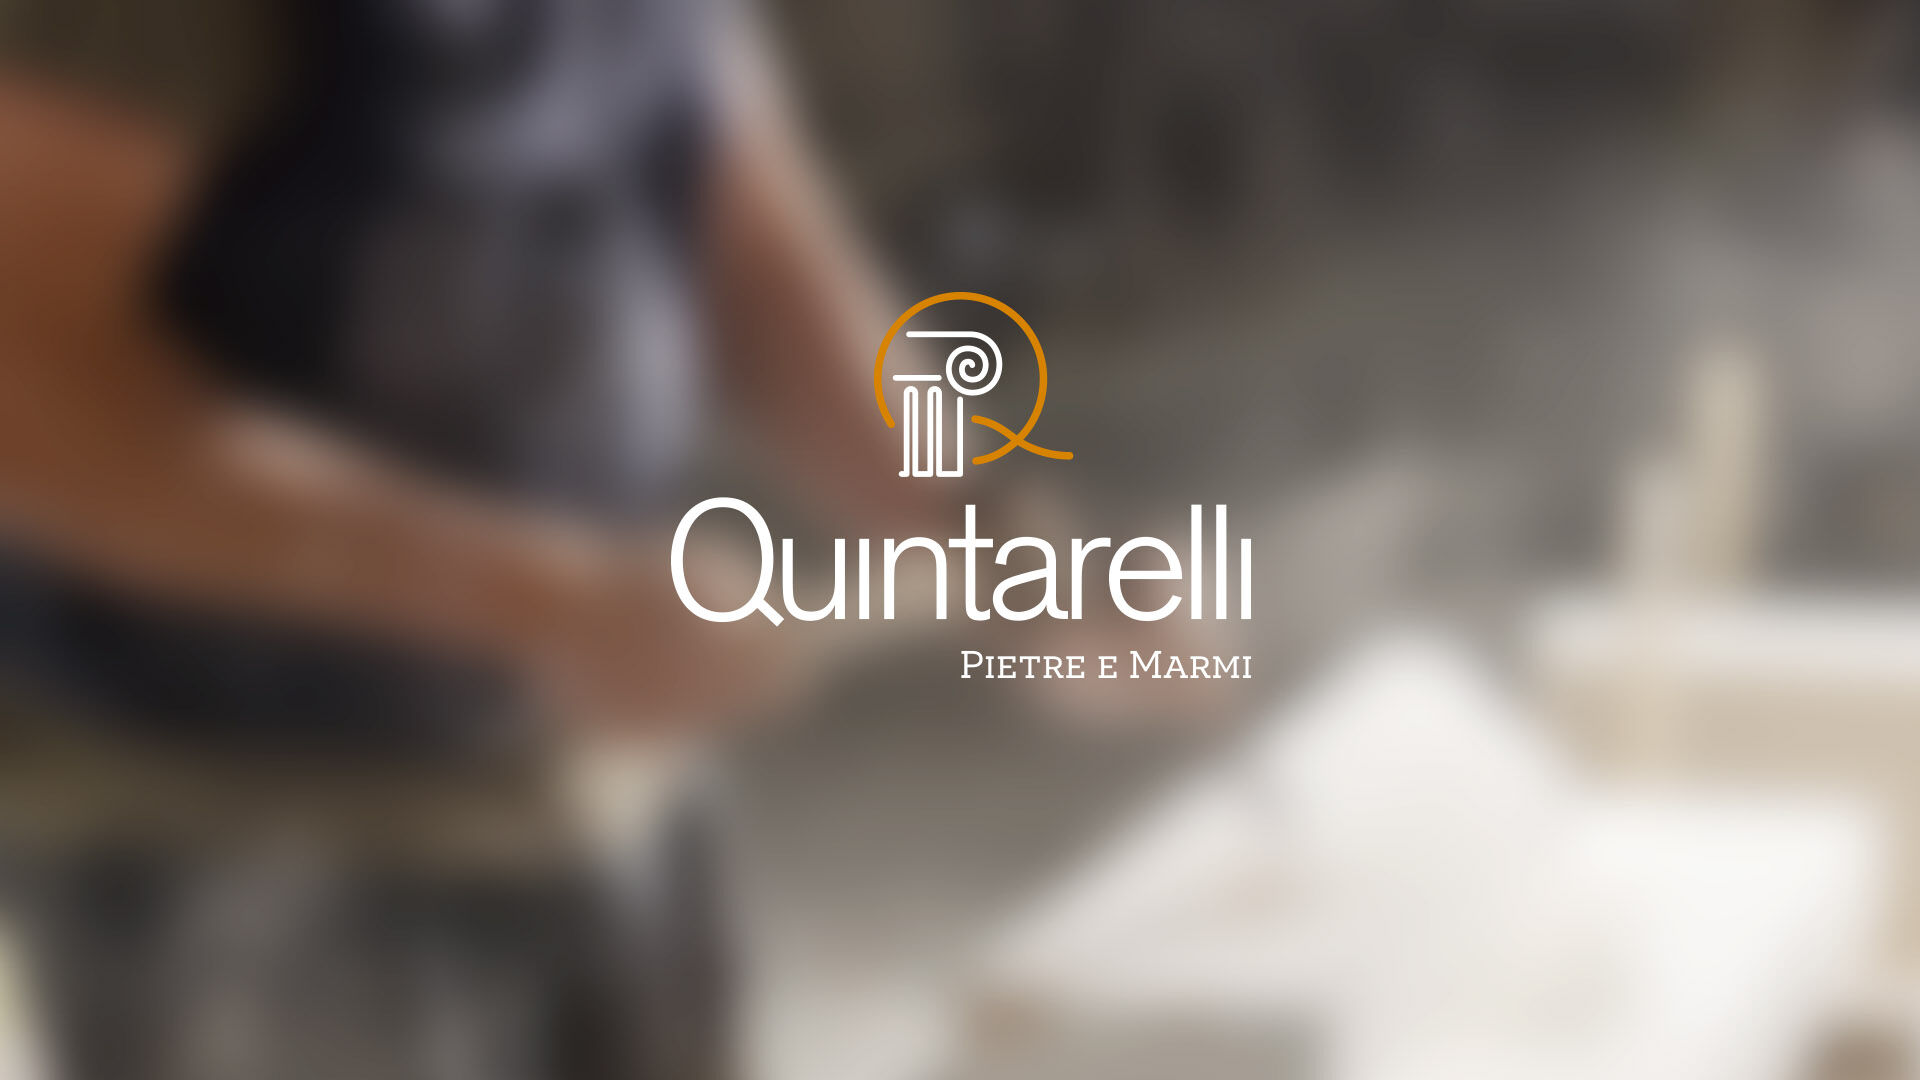 Quintarelli Pietre e Marmi  Rebranding